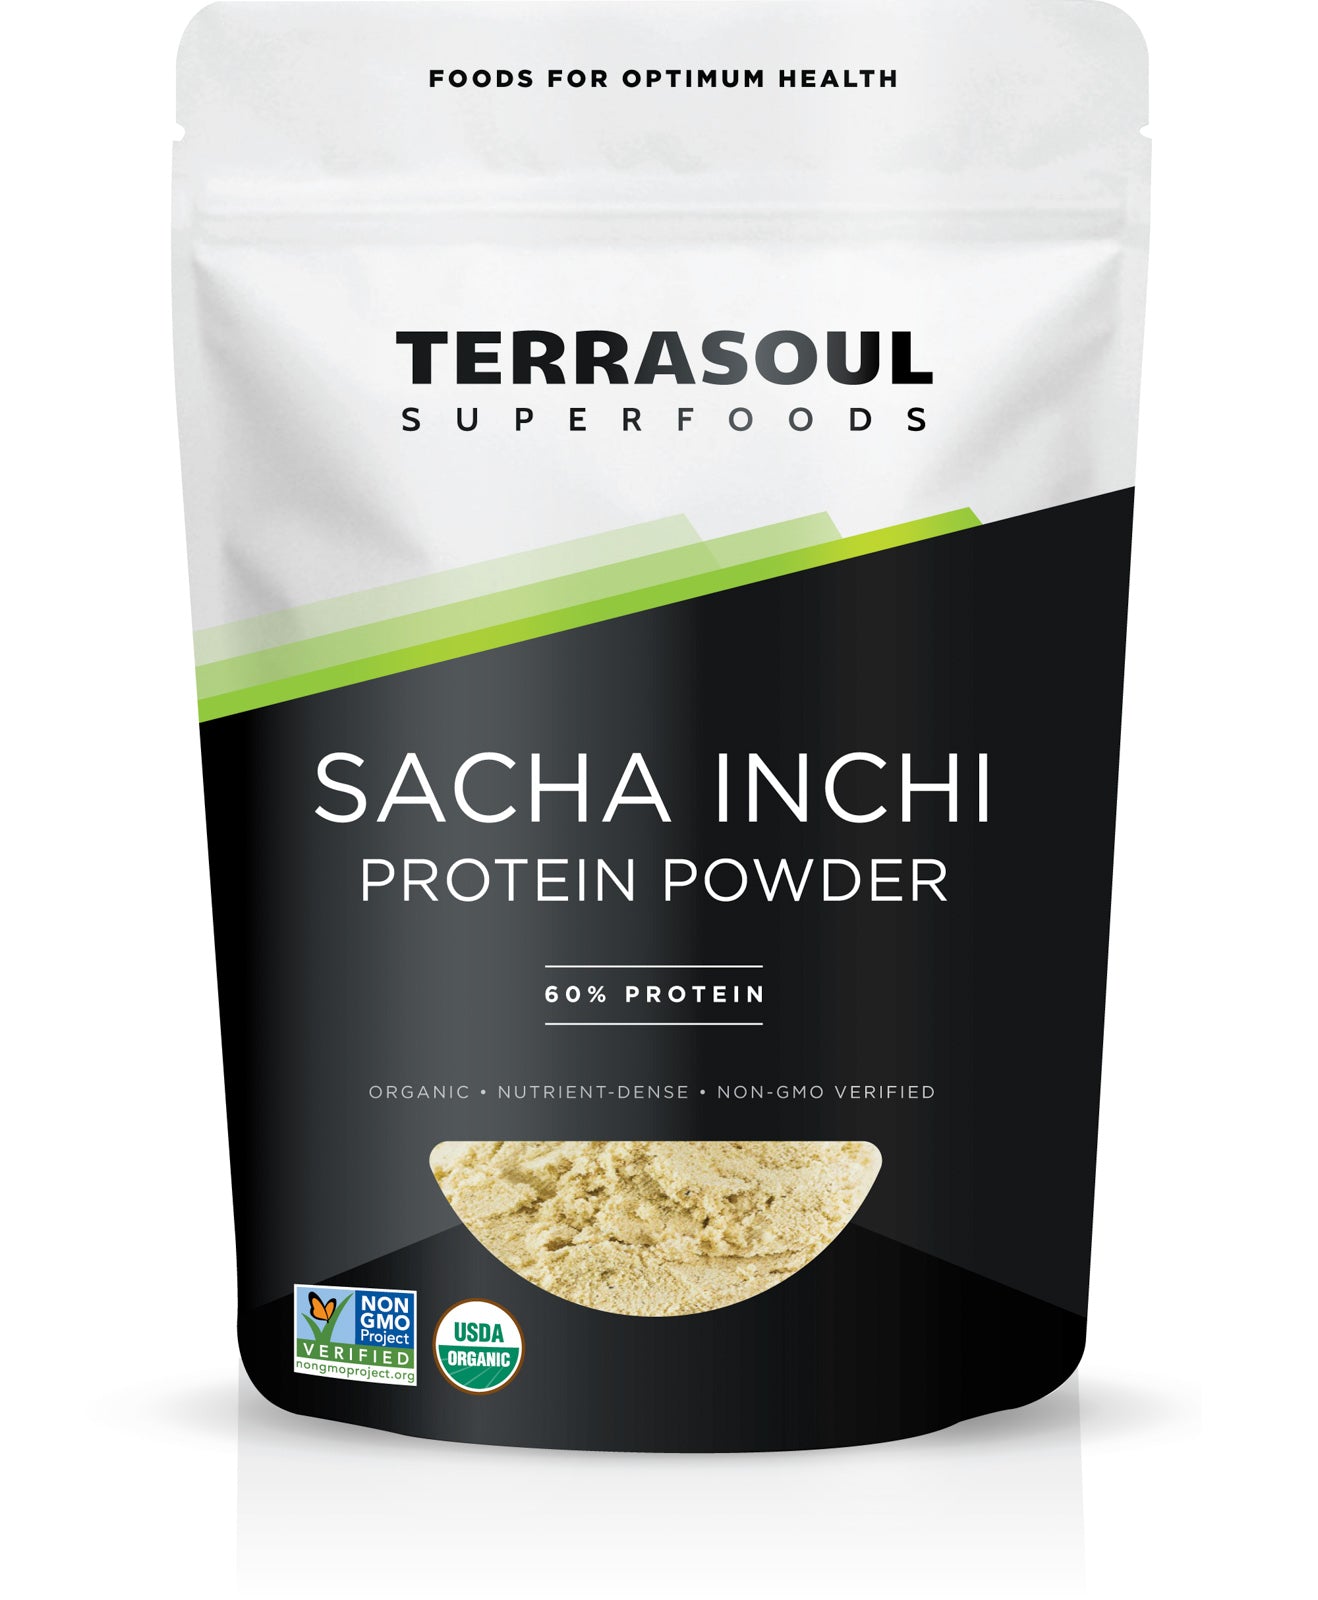 Sacha Inchi Protein Powder (60% Protein)